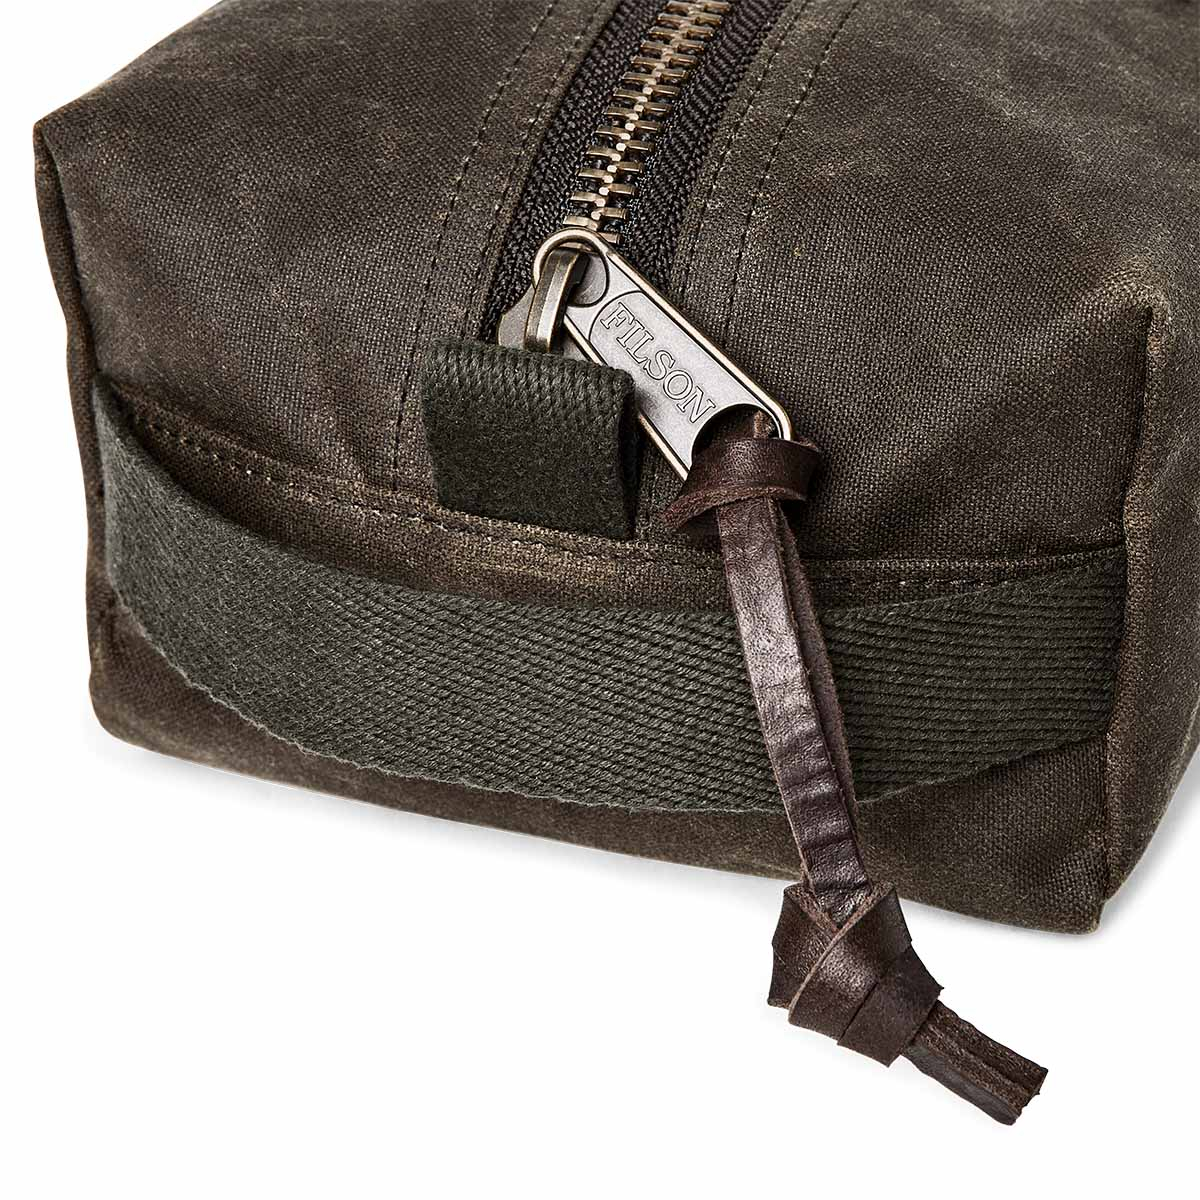 Filson Tin Cloth Travel Kit Otter Green, eine kompakte, leichte und robuste Kulturtasche aus traditionellen Materialien und modernem Design